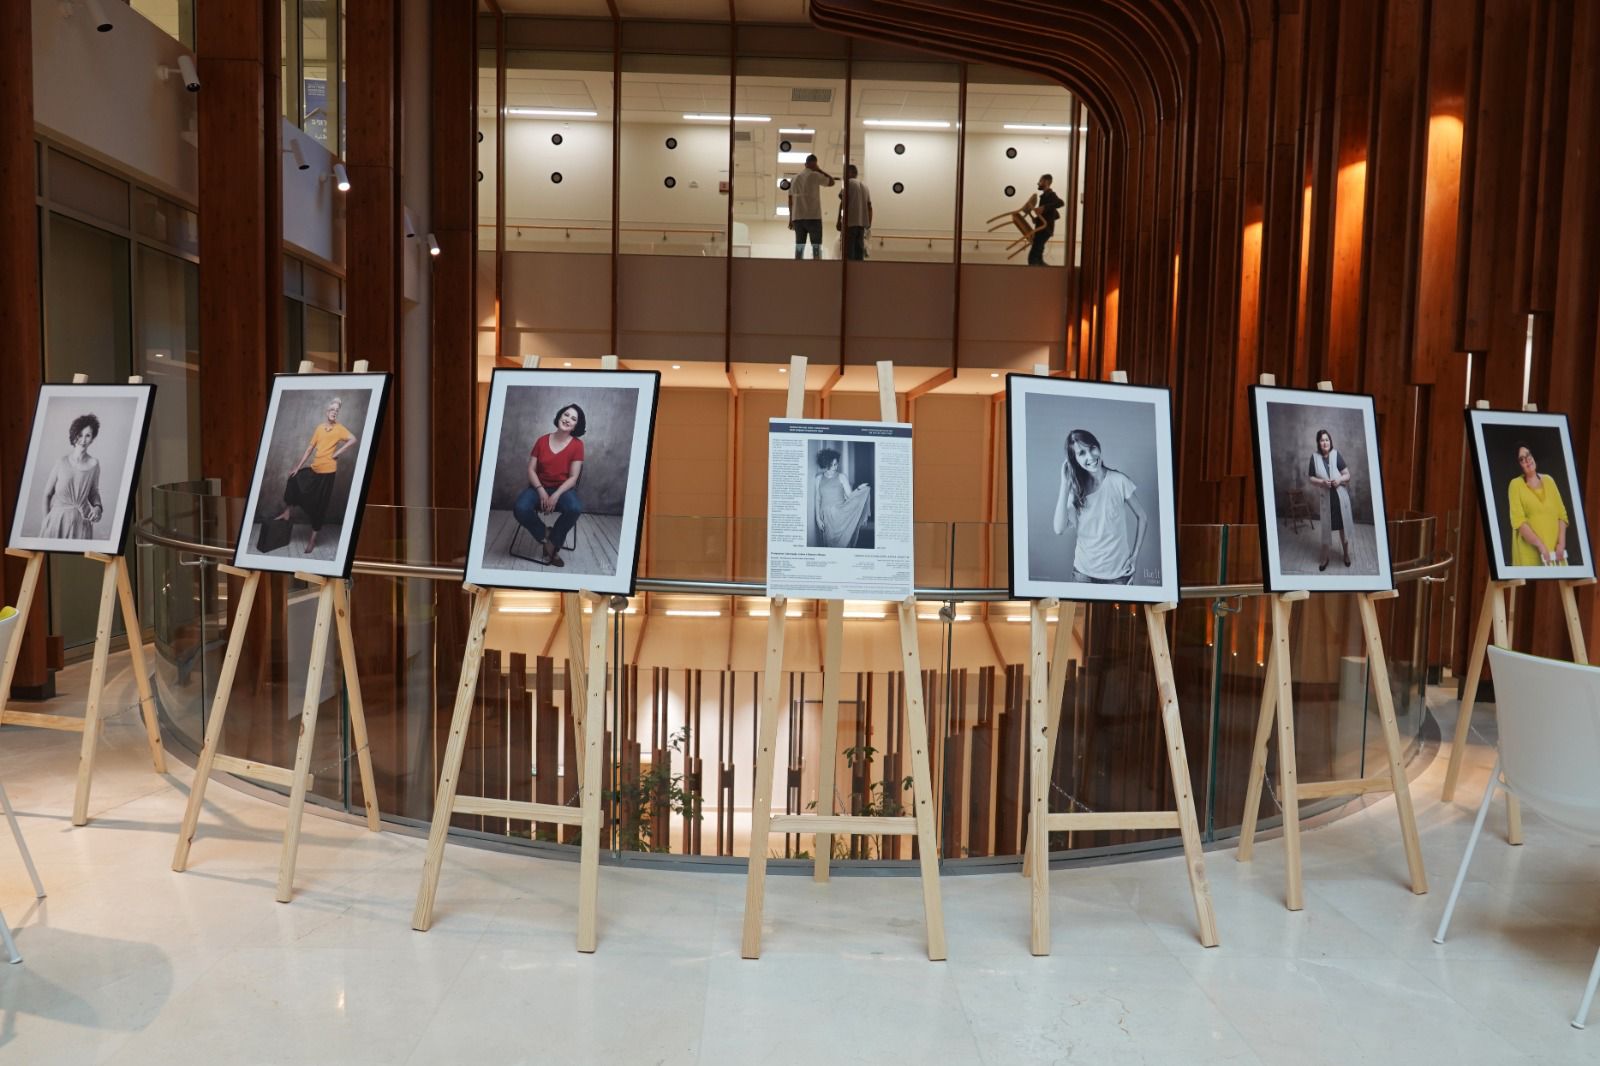 "תמיד אישה": התערוכה בשערי צדק שנותנת תקווה לנשים